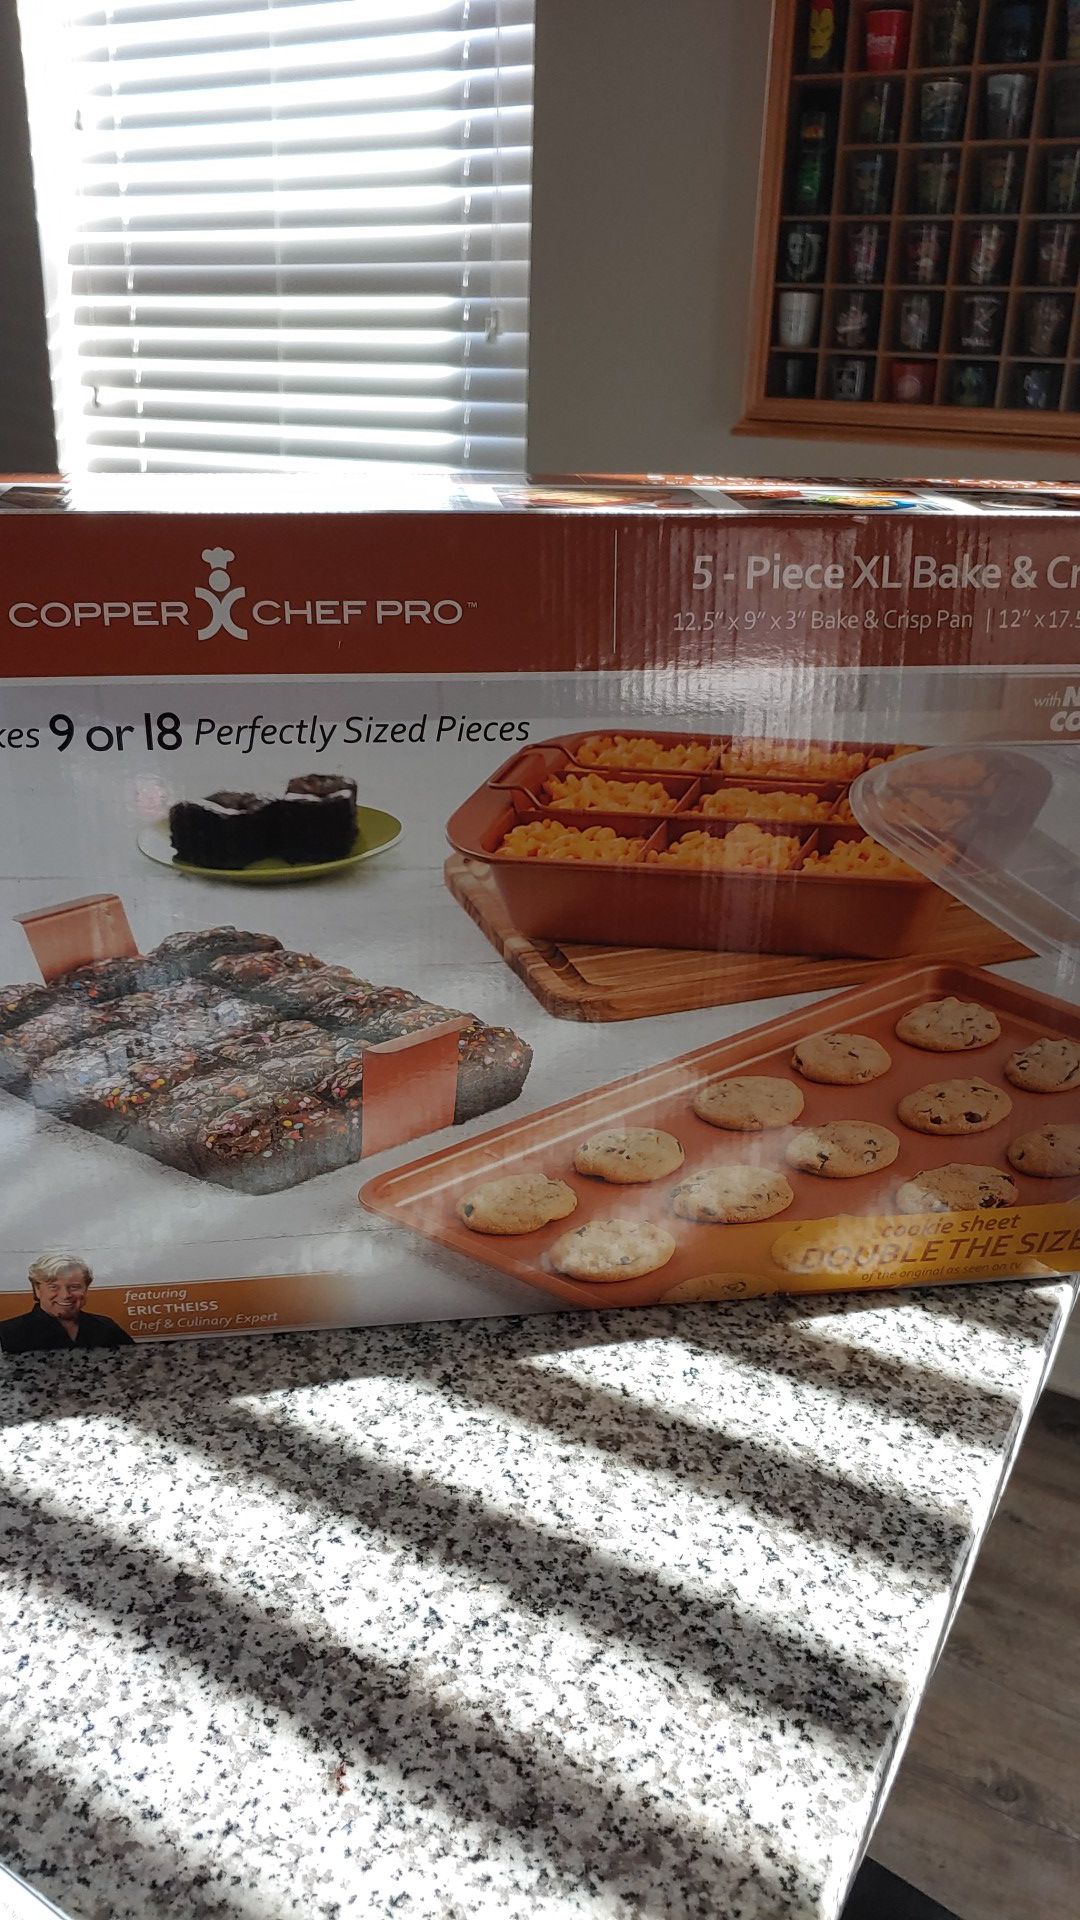 Copper Chef Pro 5- Piece XL Bake & Crisp Pan